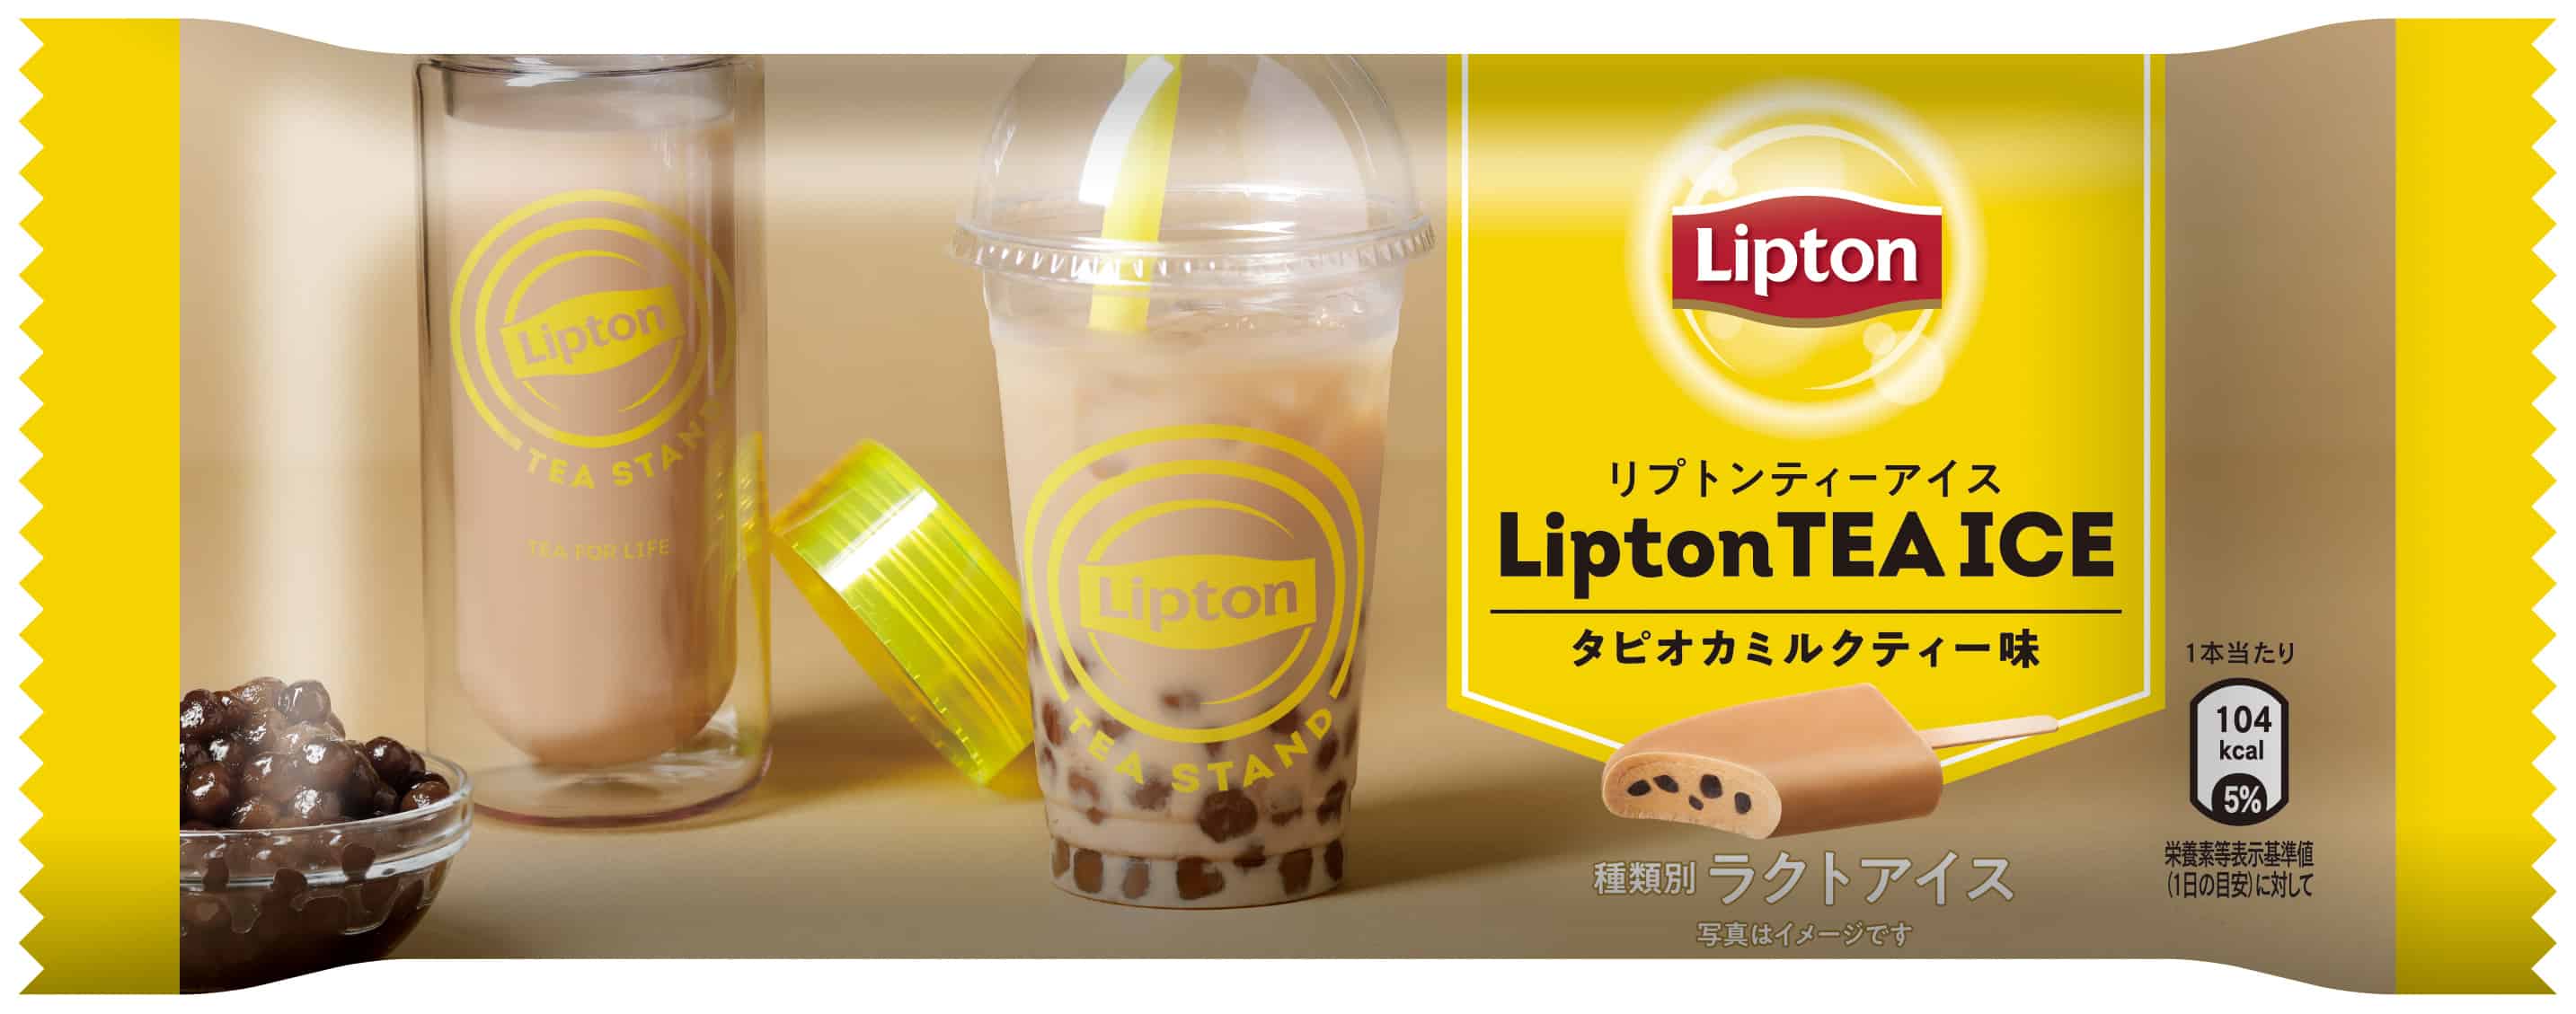 ไอศกรีมชานมไข่มุก สินค้าใหม่ลิปตันญี่ปุ่น